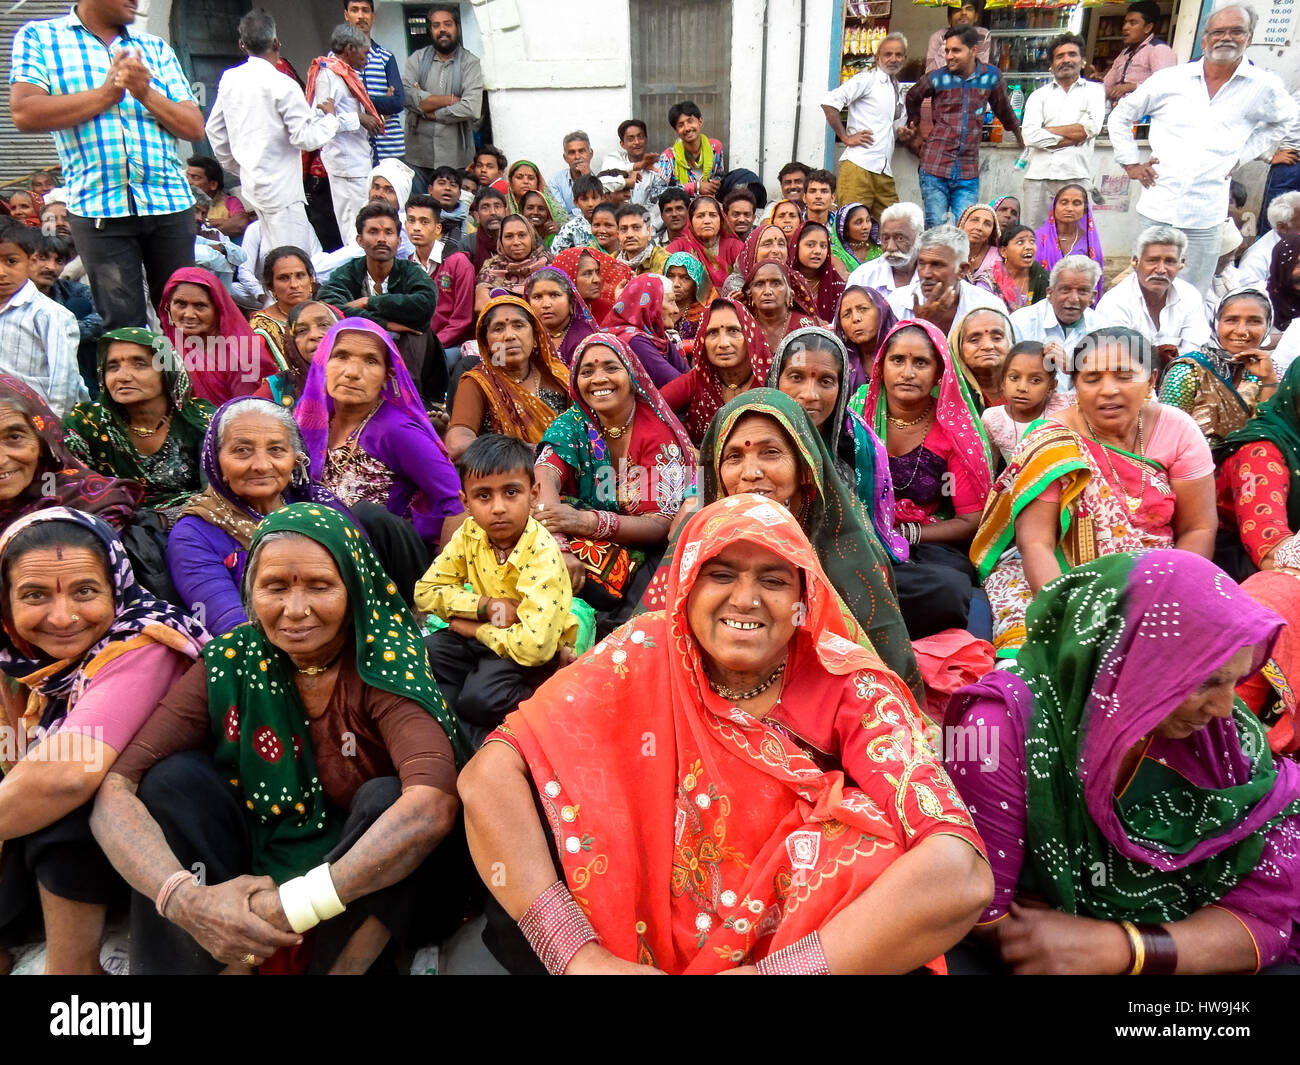 Grupo de mujeres en saris coloridos en el festival en junagadh, india Foto de stock